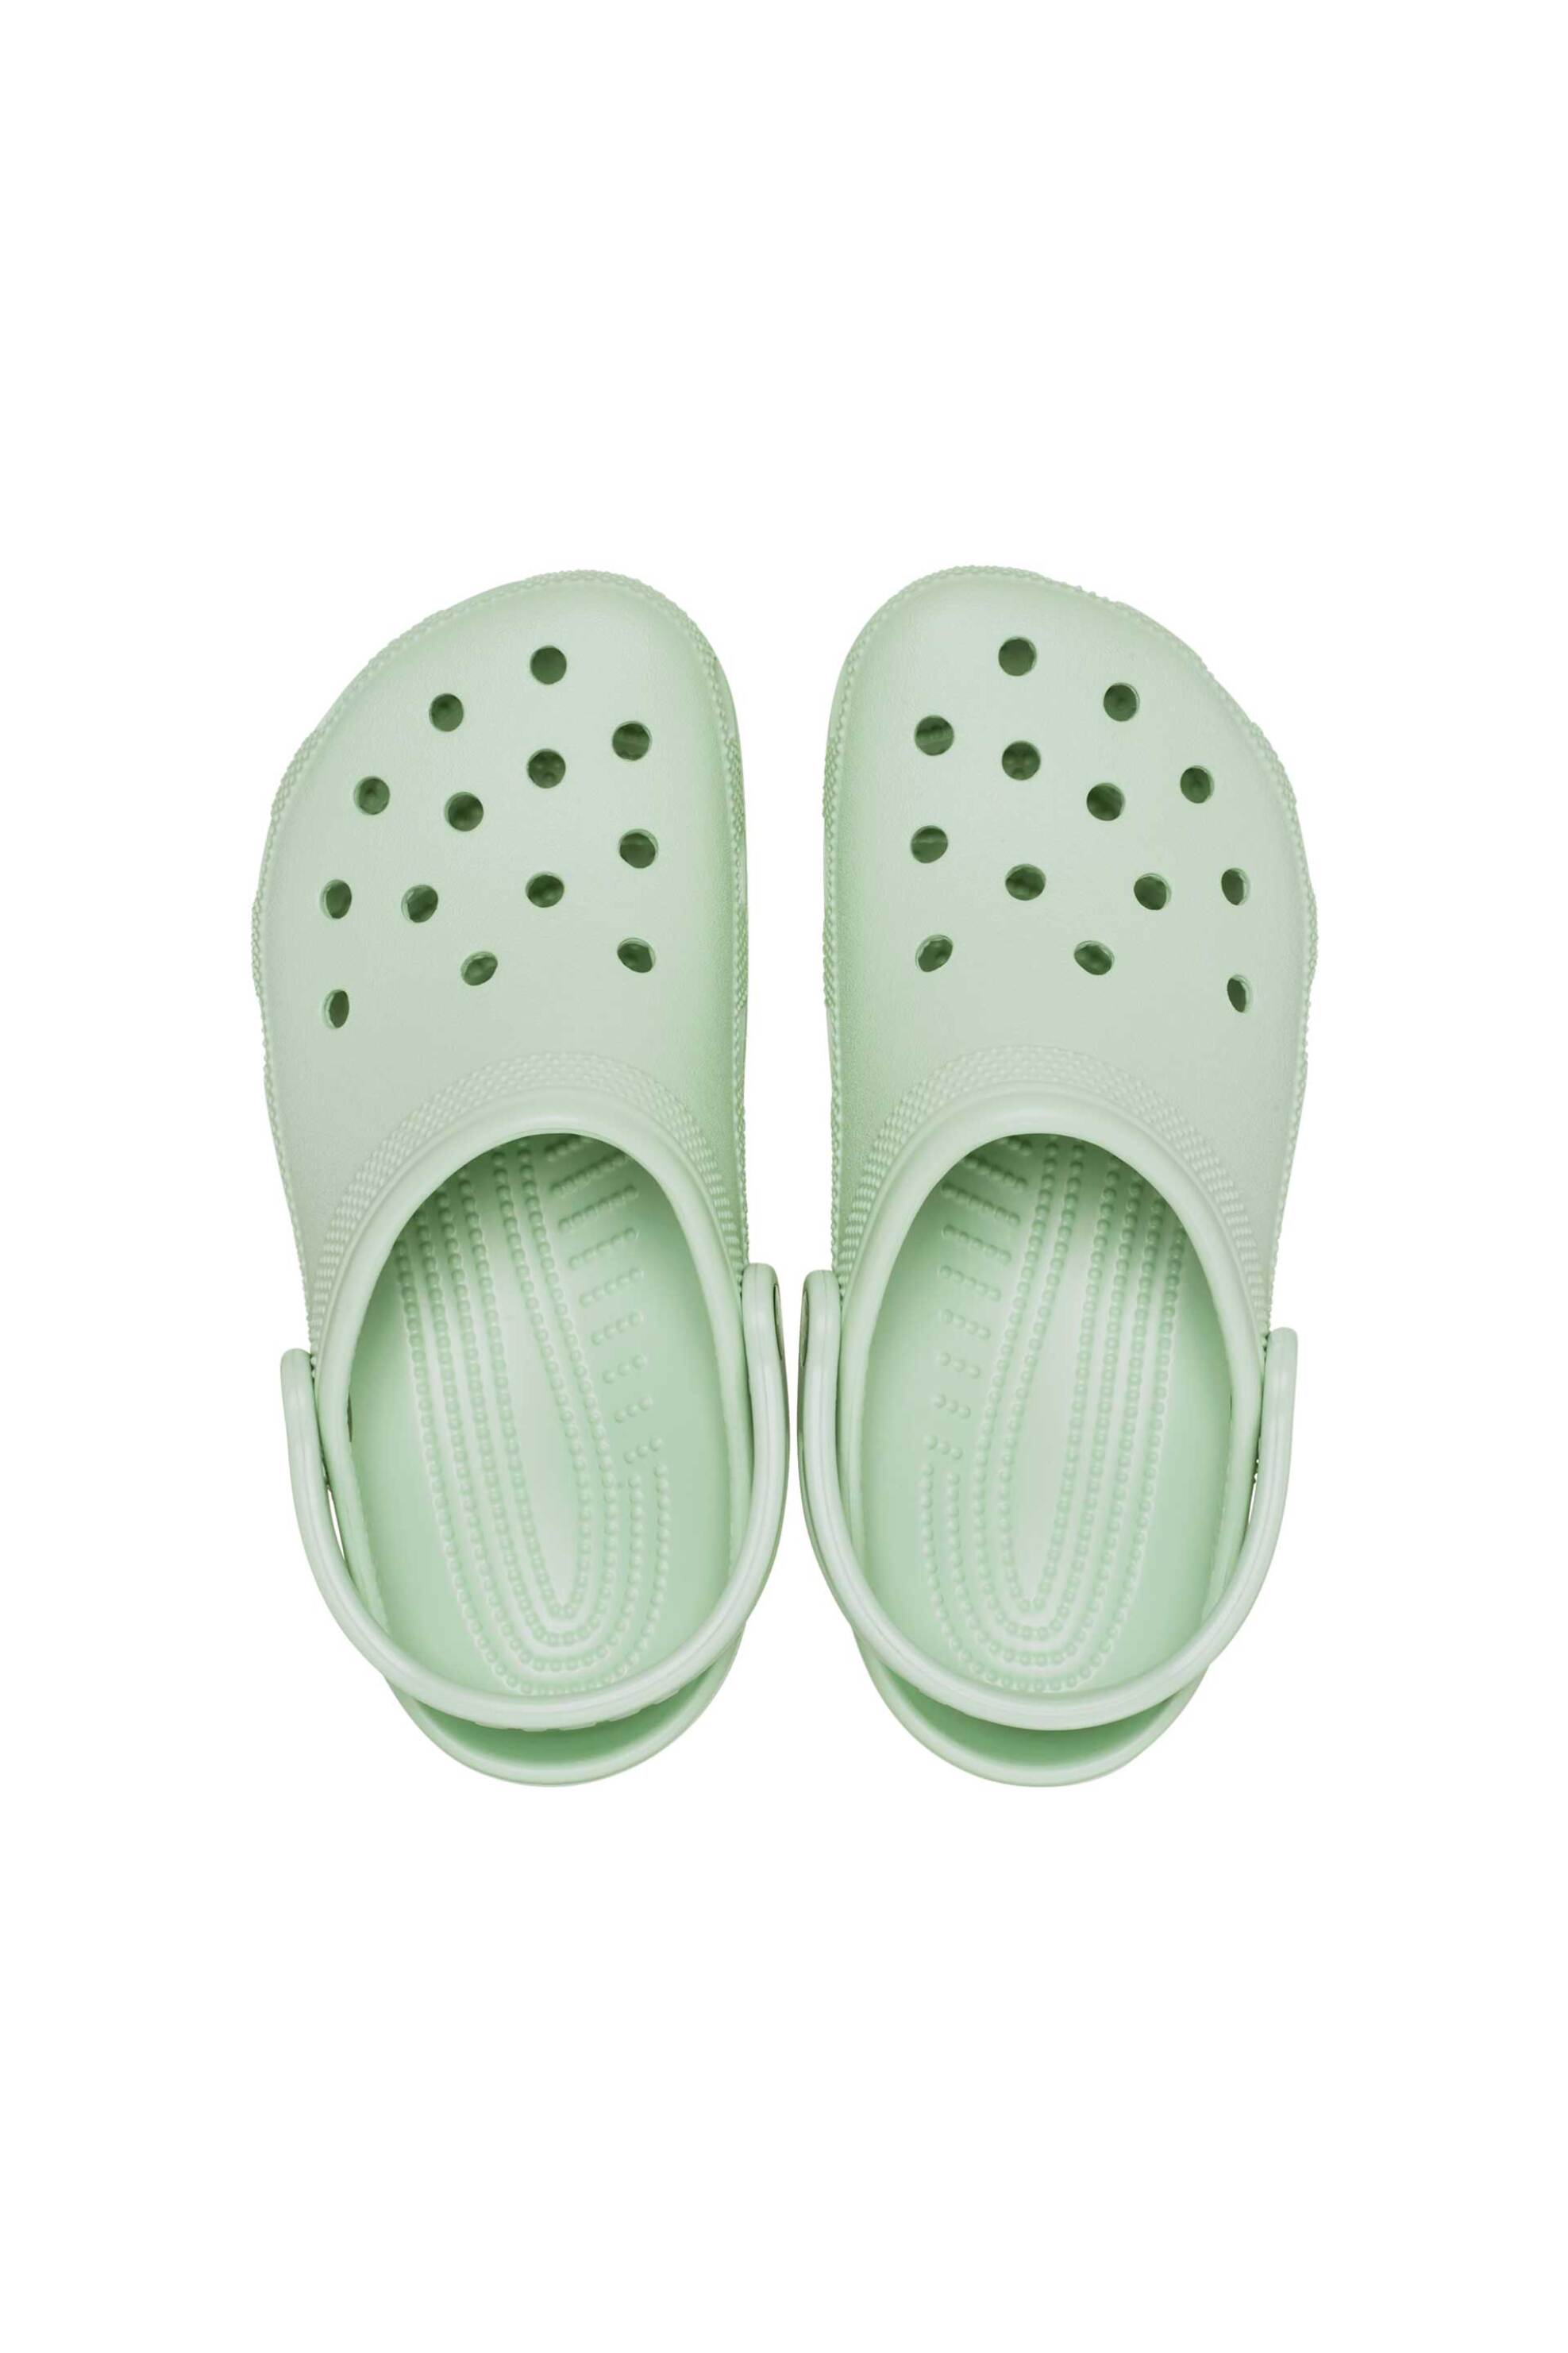 Ανδρική Μόδα > Ανδρικά Παπούτσια > Ανδρικές Παντόφλες & Σαγιονάρες Crocs unisex clogs μονόχρωμα με διάτρητο σχέδιο "Classic" - E61000 Βεραμάν